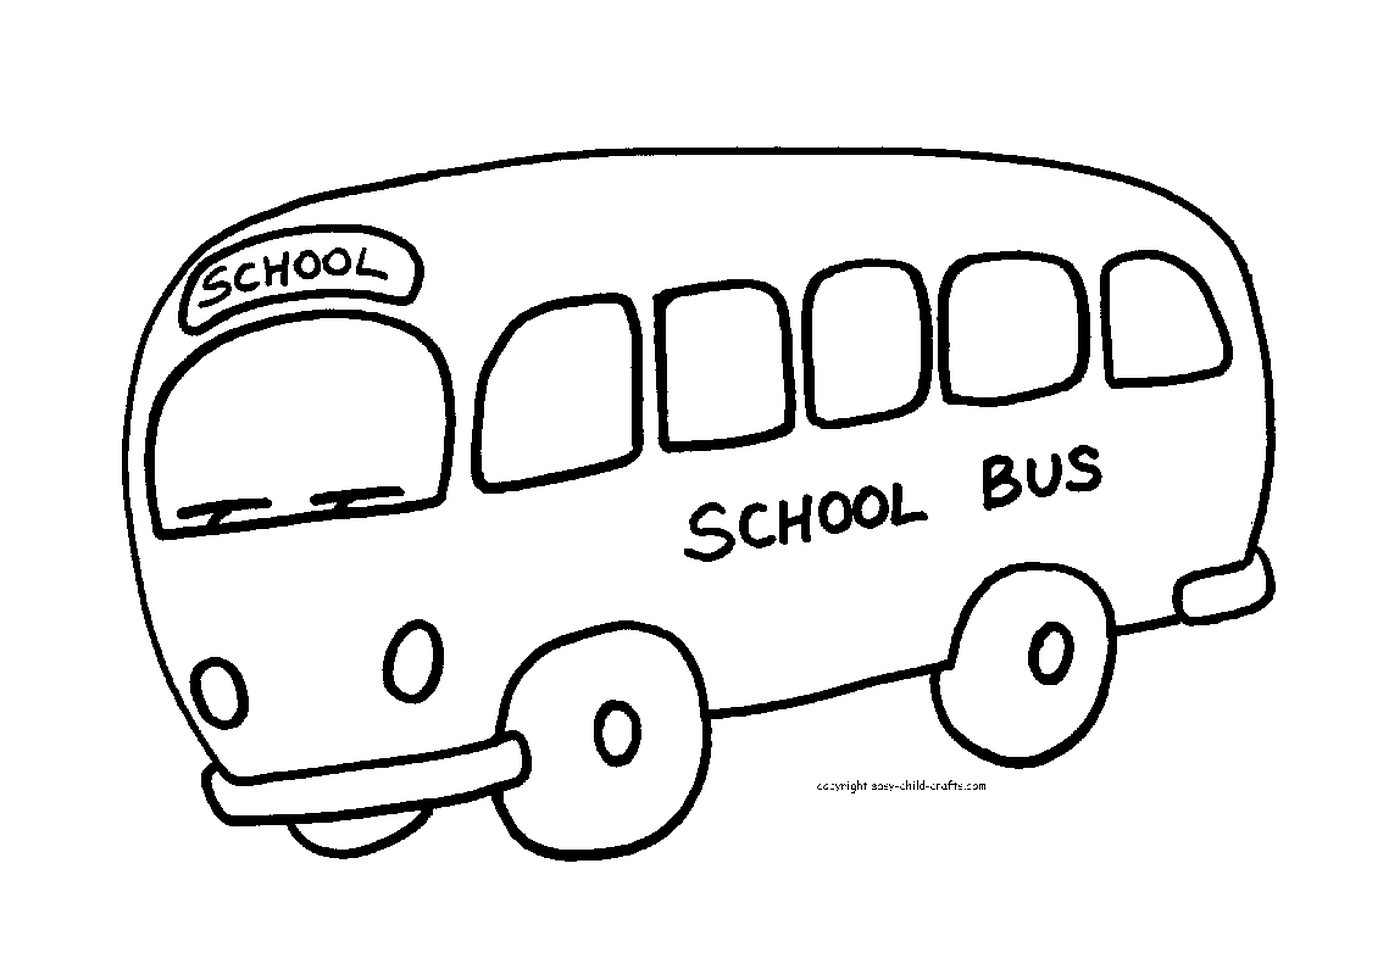  Ein Schulbus bereit, um die Schüler willkommen zu heißen 